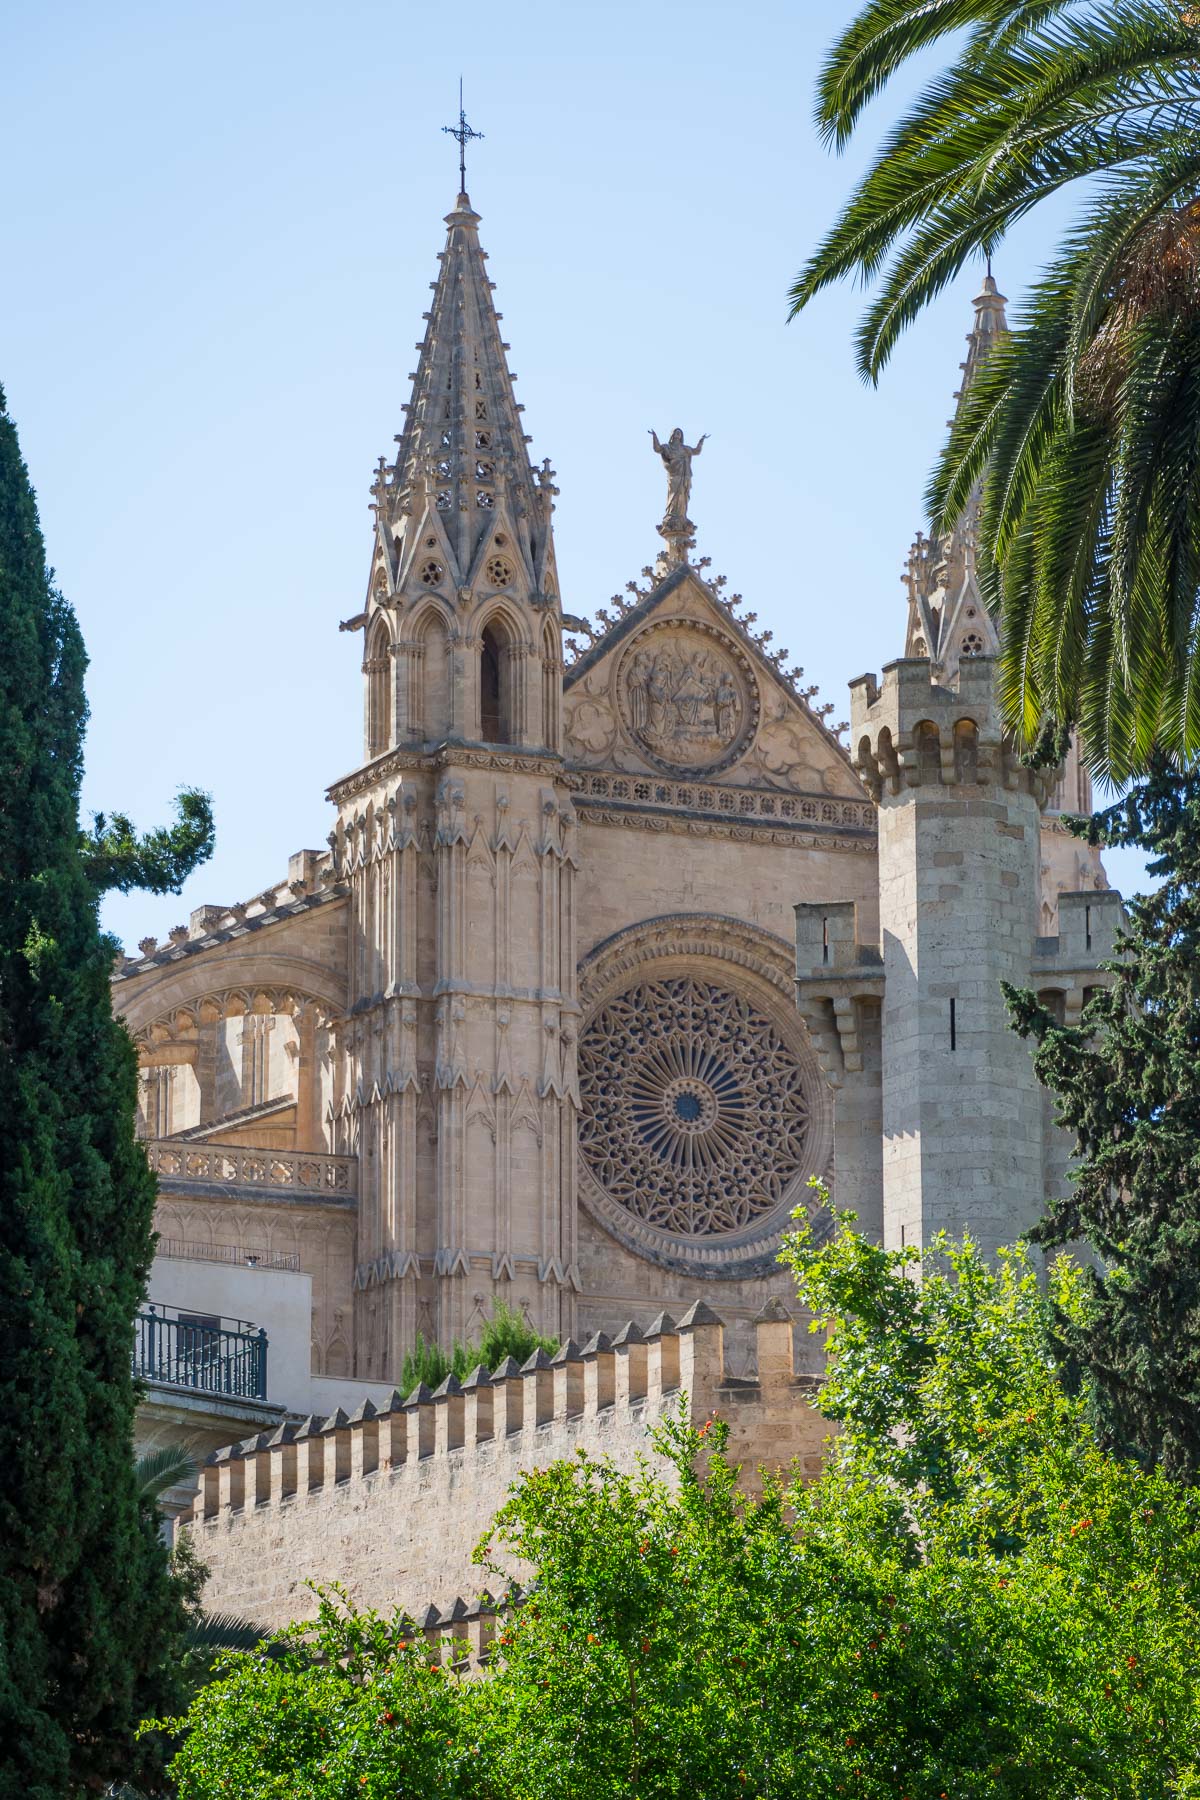 The view of La Seu from Fundación Bartolomé March in Palma De Mallorca. 